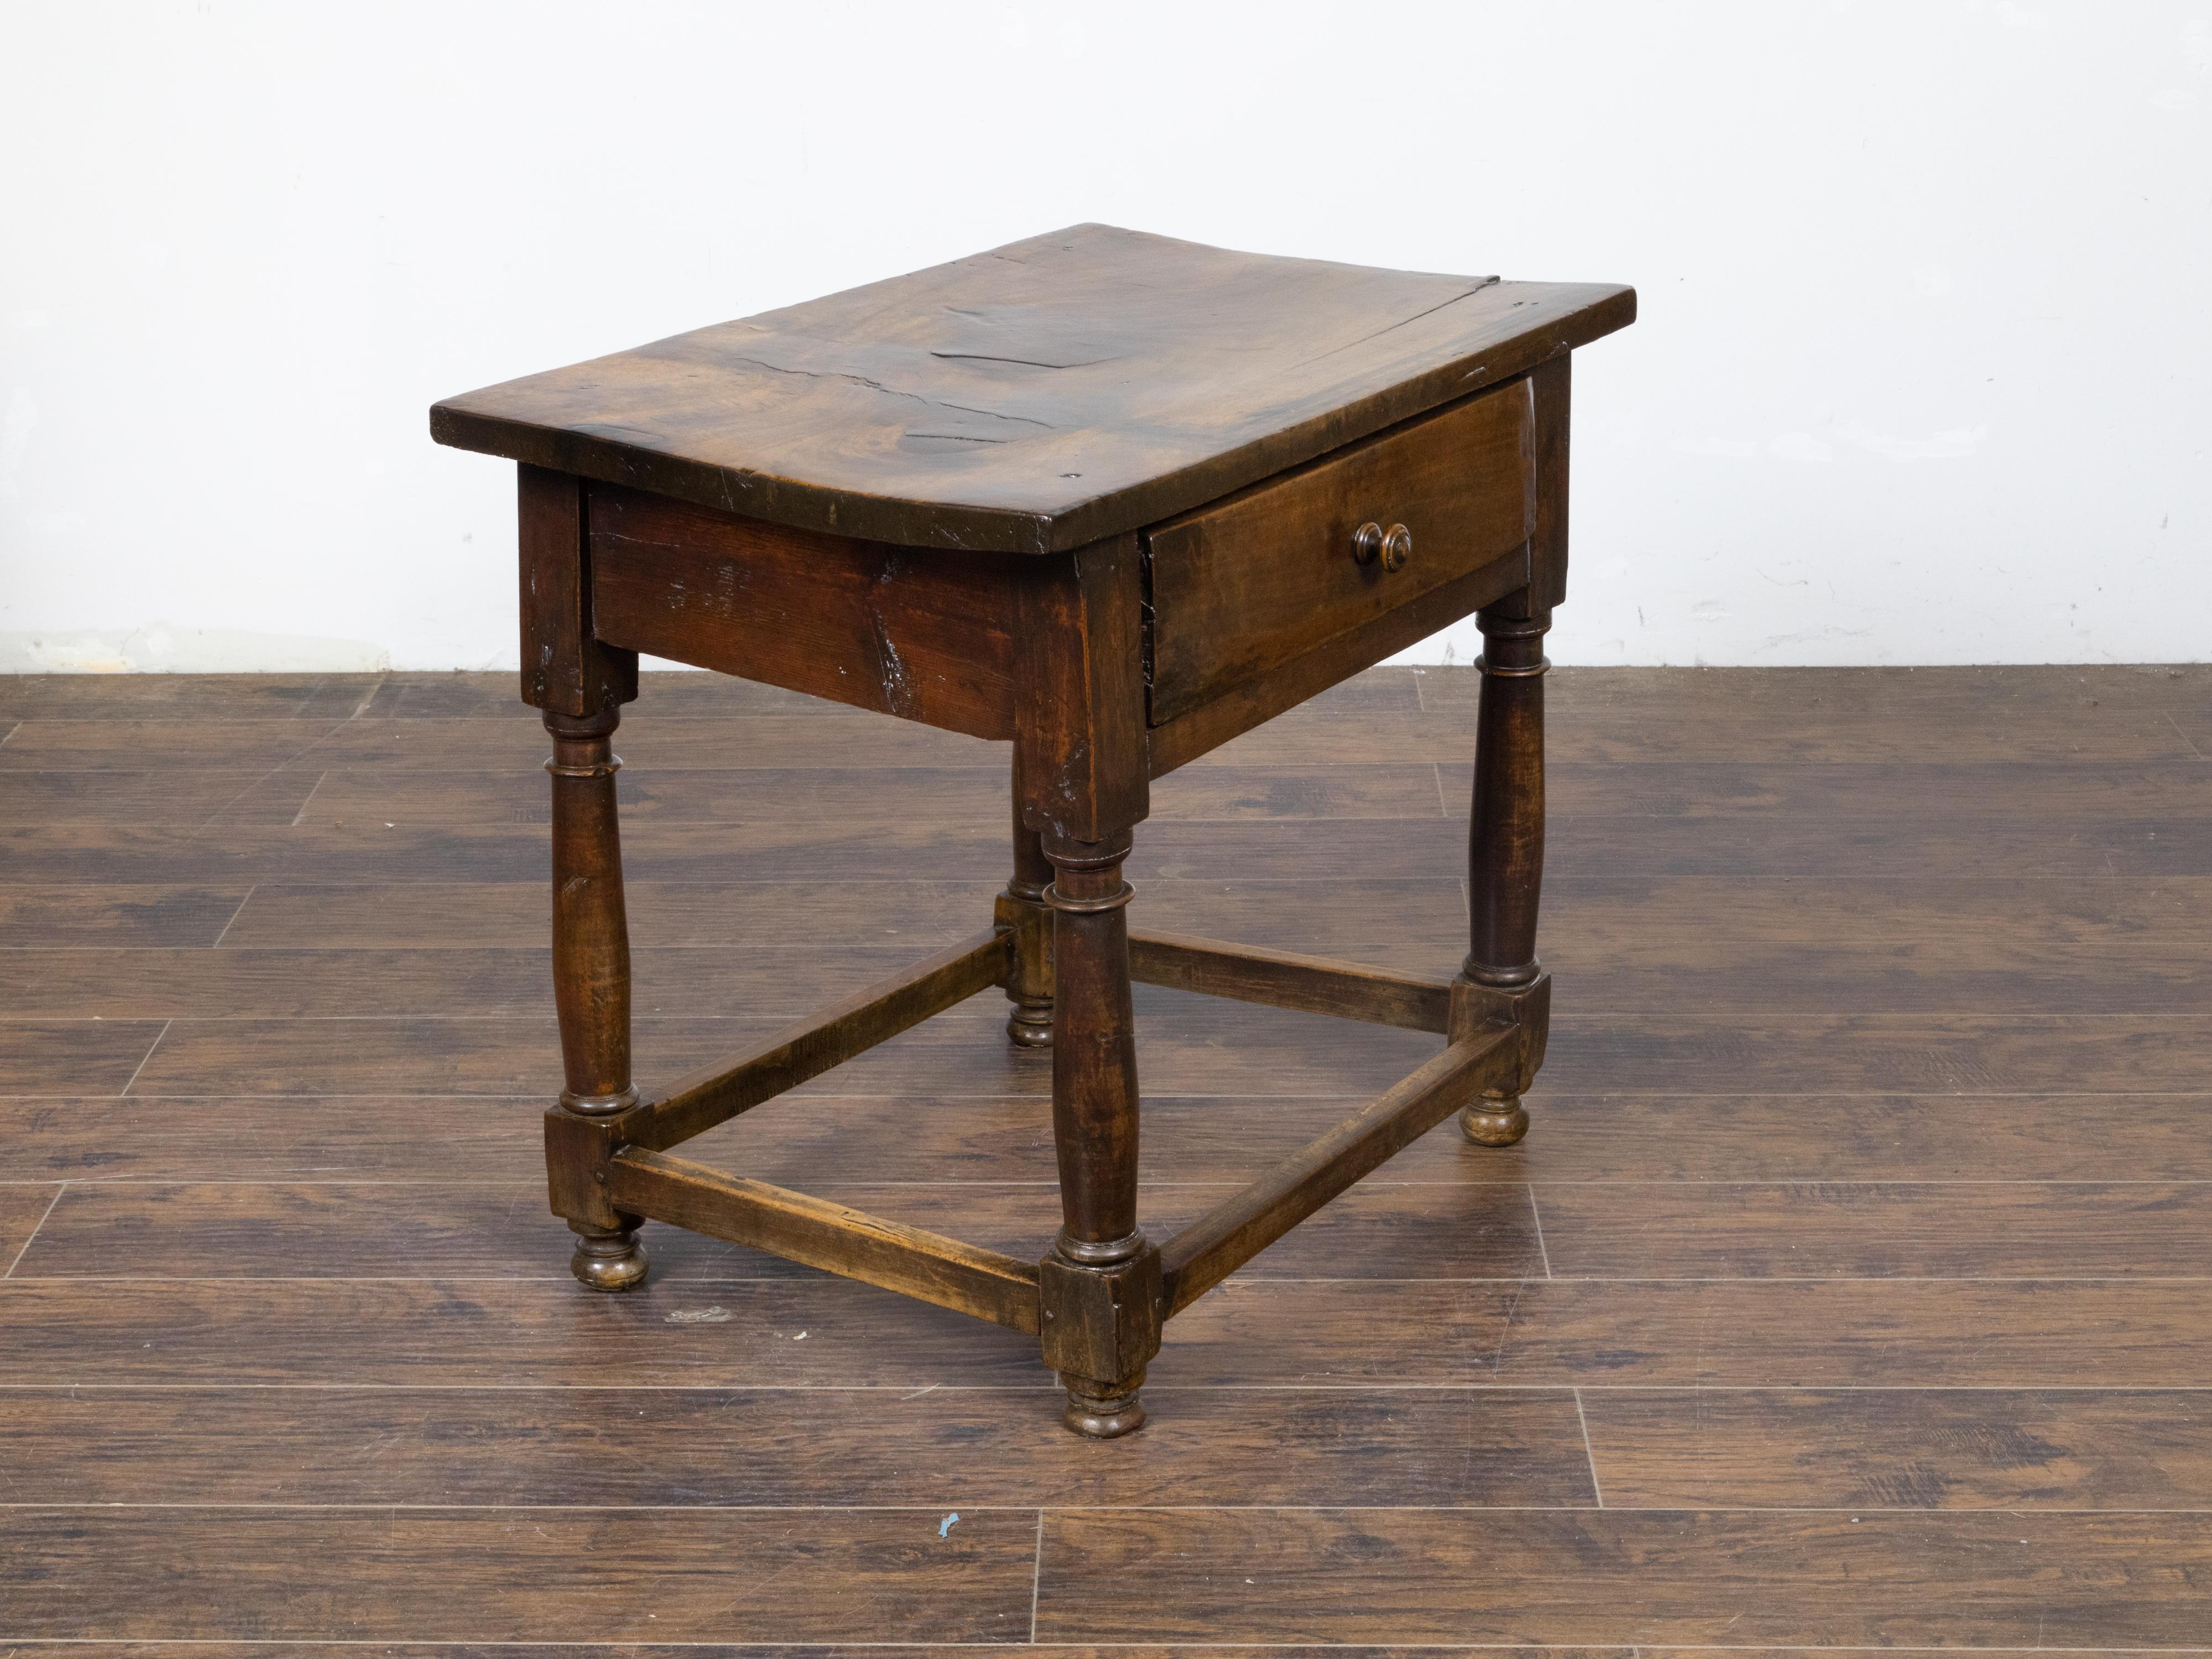 Ein englischer Nussbaumtisch aus dem 19. Jahrhundert mit einer Schublade, säulenförmigen Beinen auf Ballenfüßen, schlichten seitlichen Streckern und schön gealterter Patina. Dieser Tisch aus englischem Nussbaumholz stammt aus dem 19. Jahrhundert und